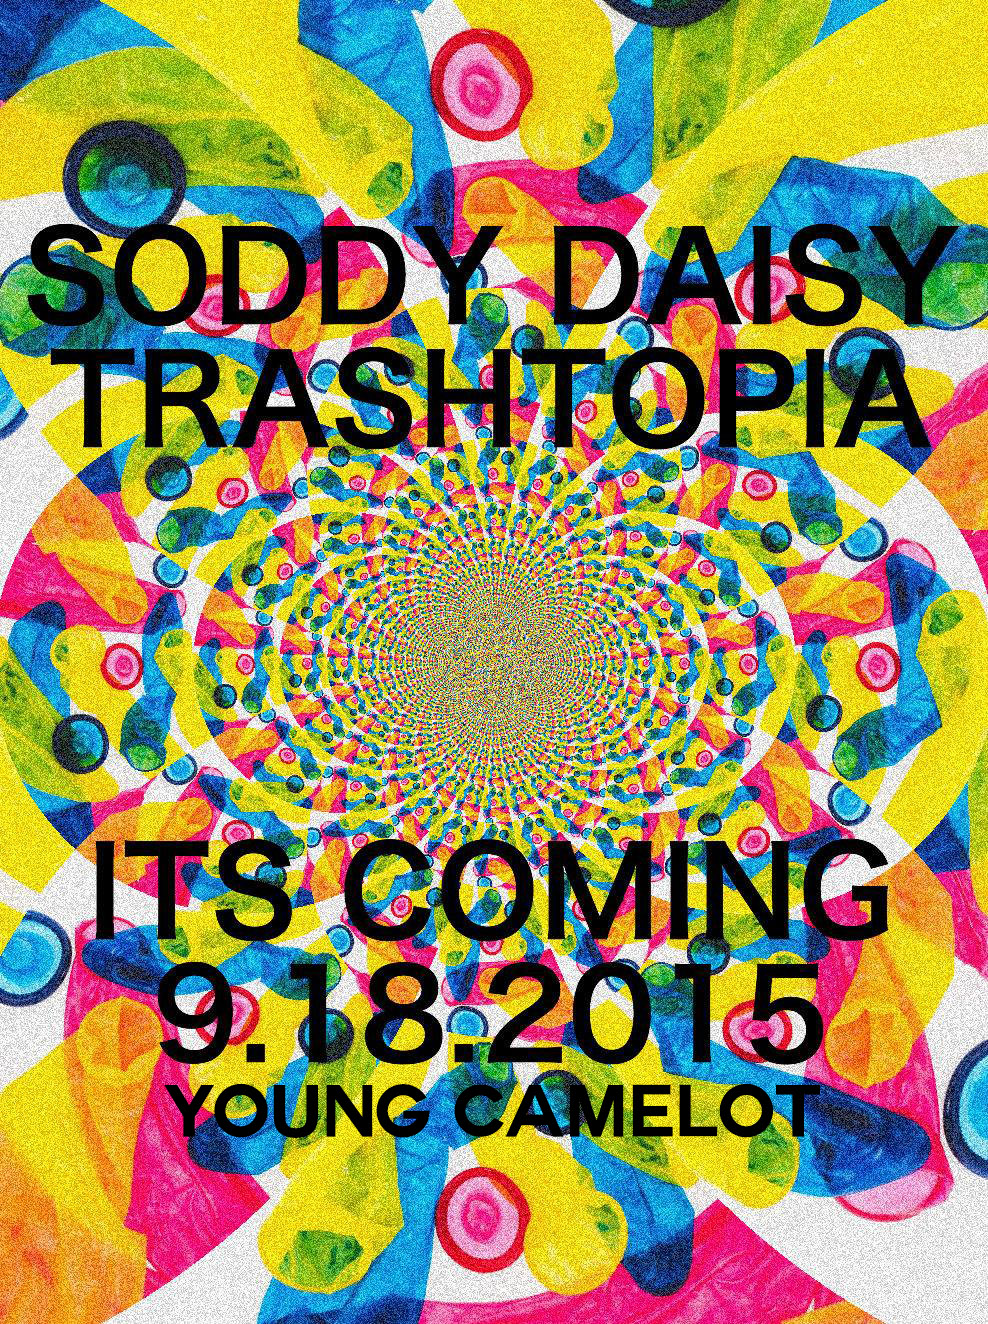 Soddy Daisy “Trashtopia” Album Review & Release Show 9/18